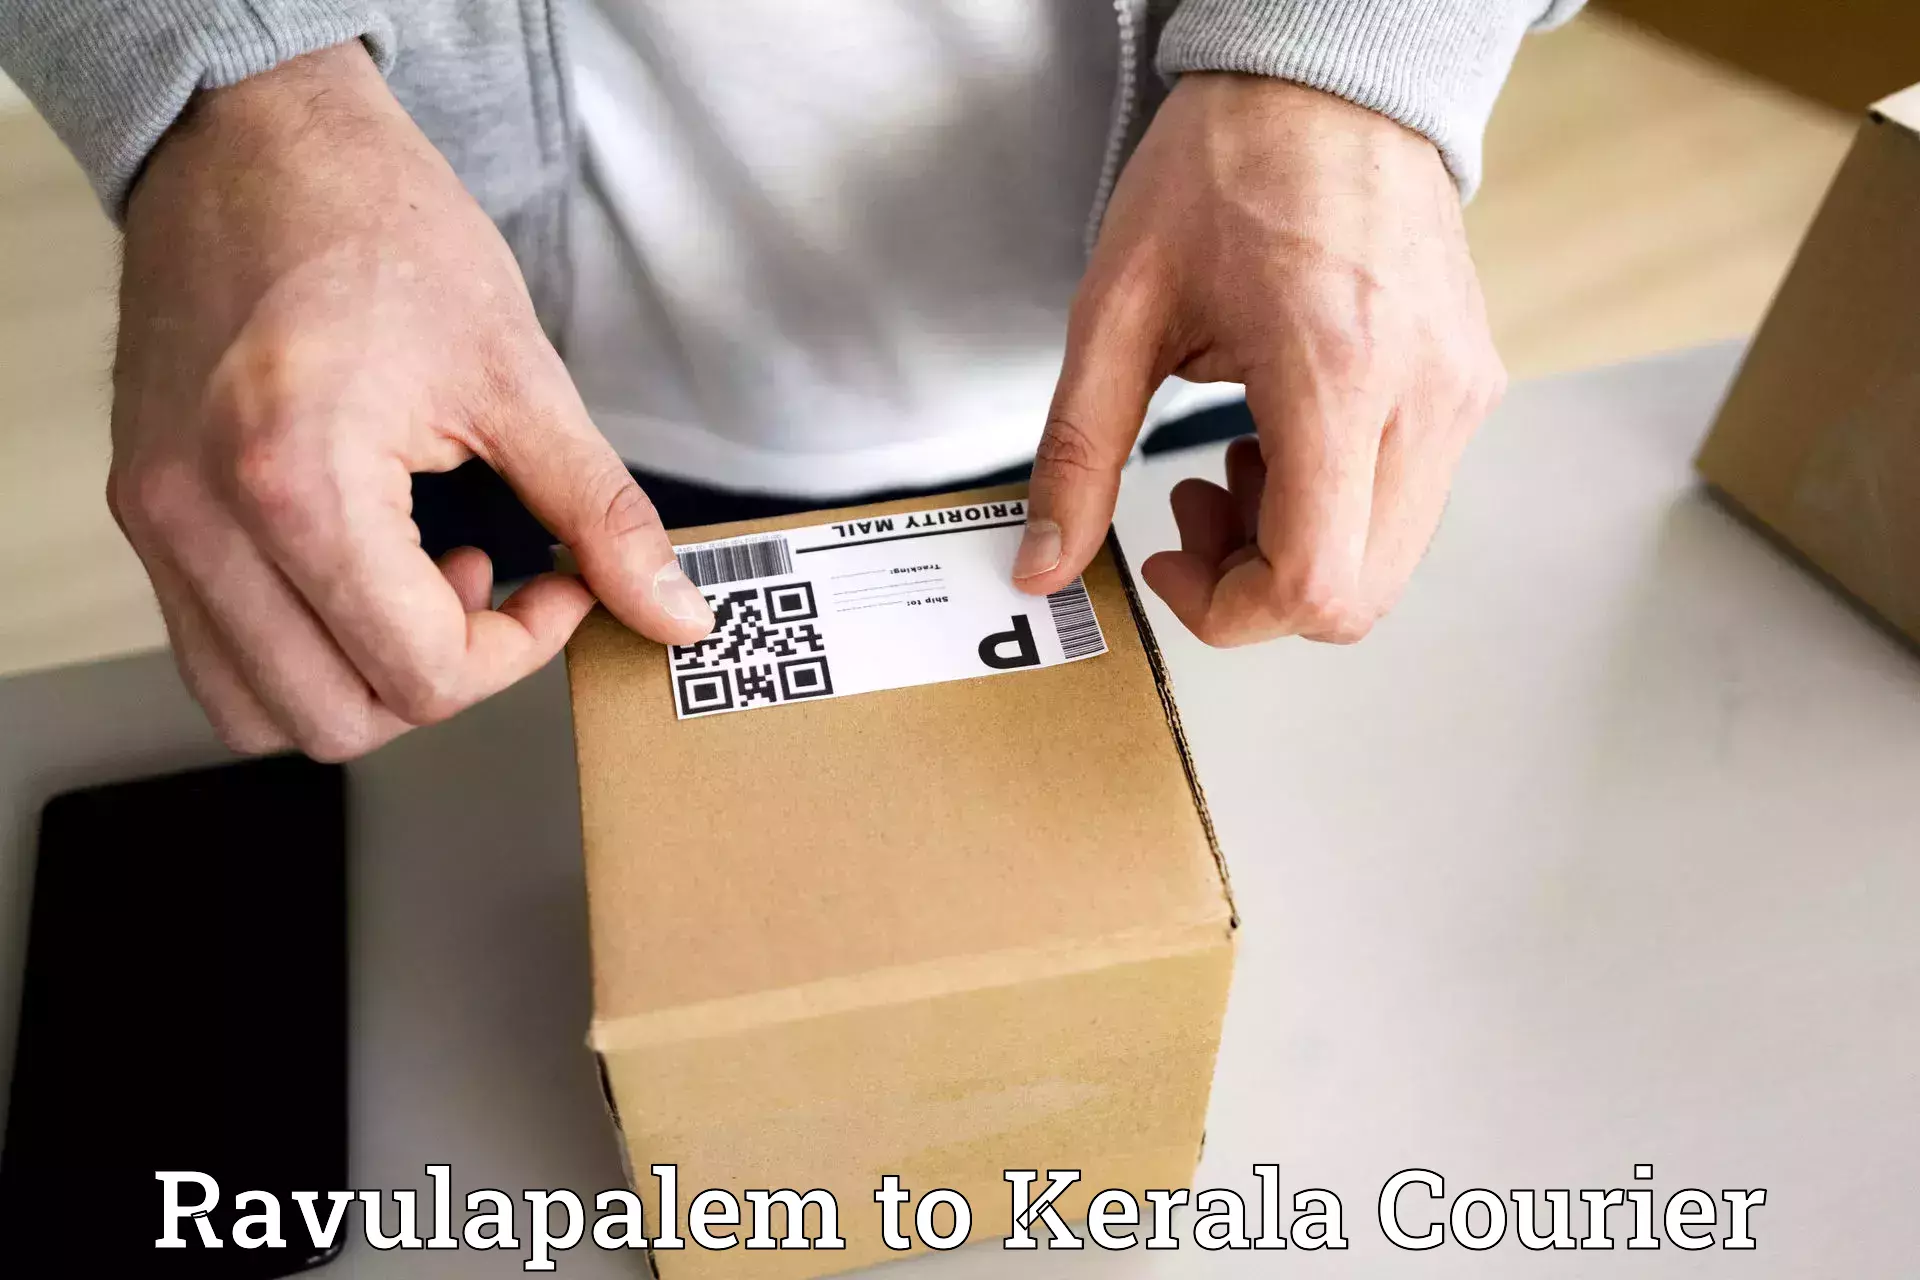 Punctual parcel services Ravulapalem to Kuttikol